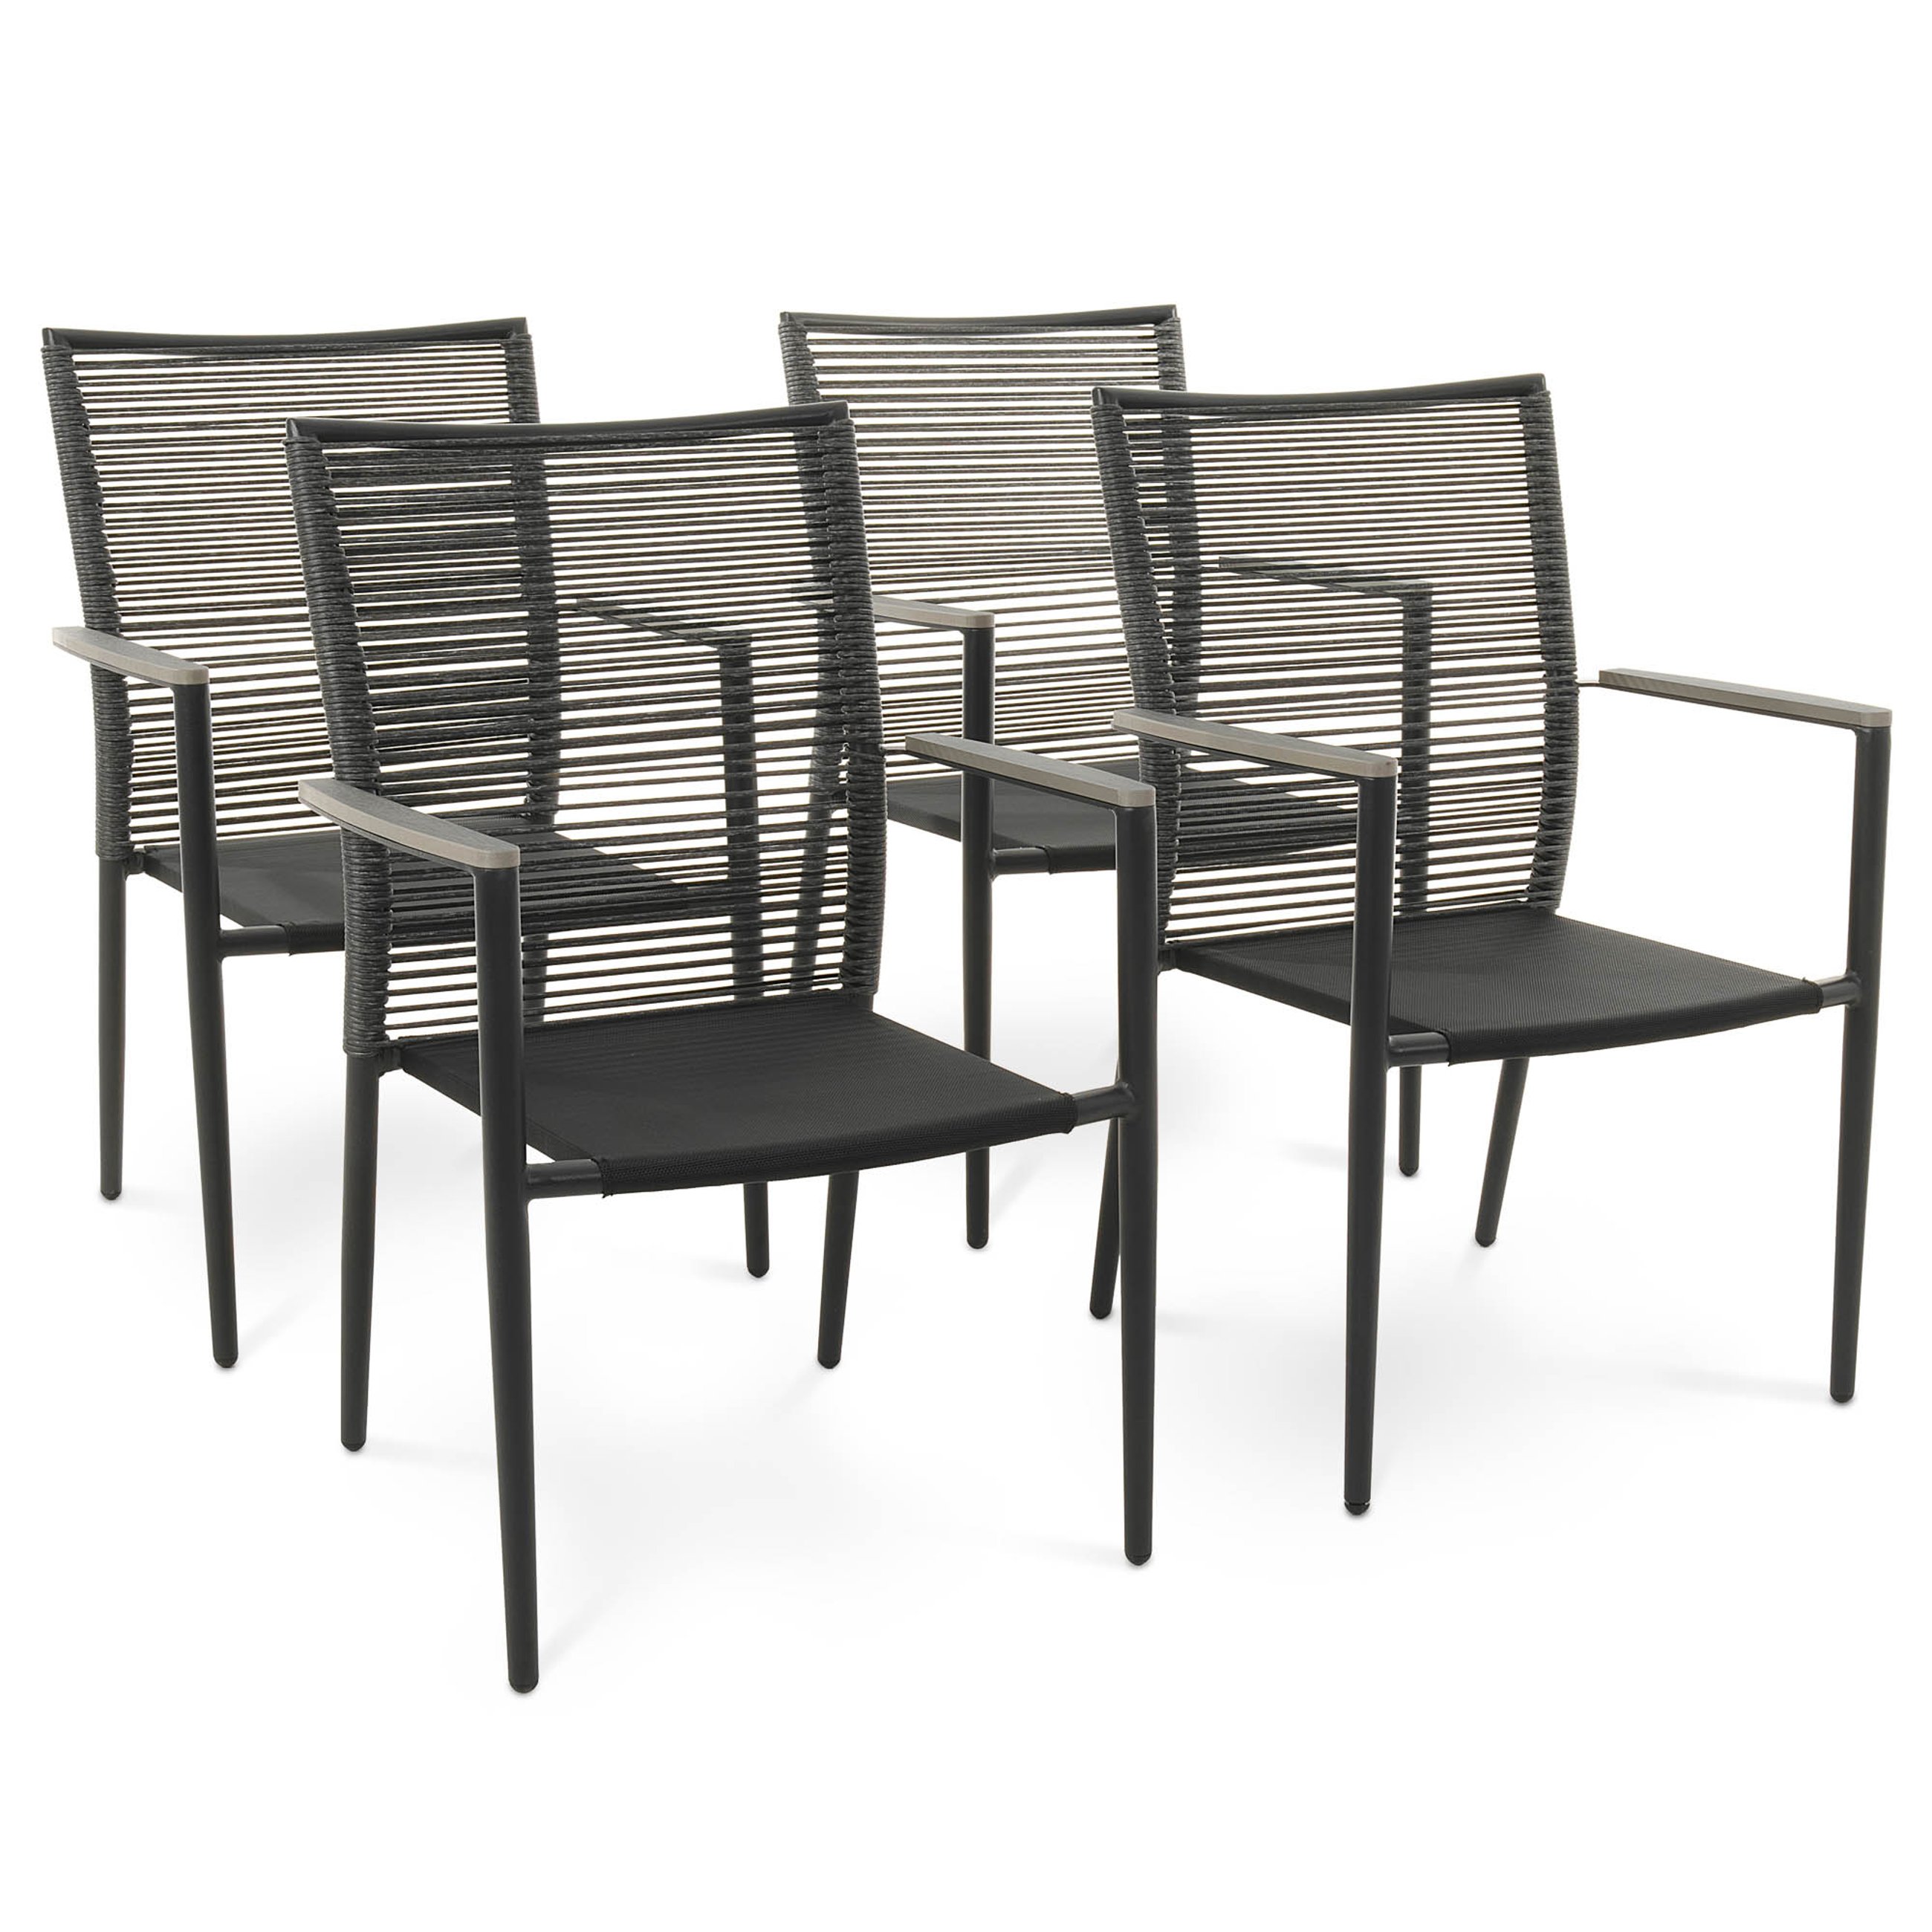 Zestaw 4 krzeseł ogrodowych Asti szare marki di volio zostały zaprojektowane z myślą o wygodzie użytkowania